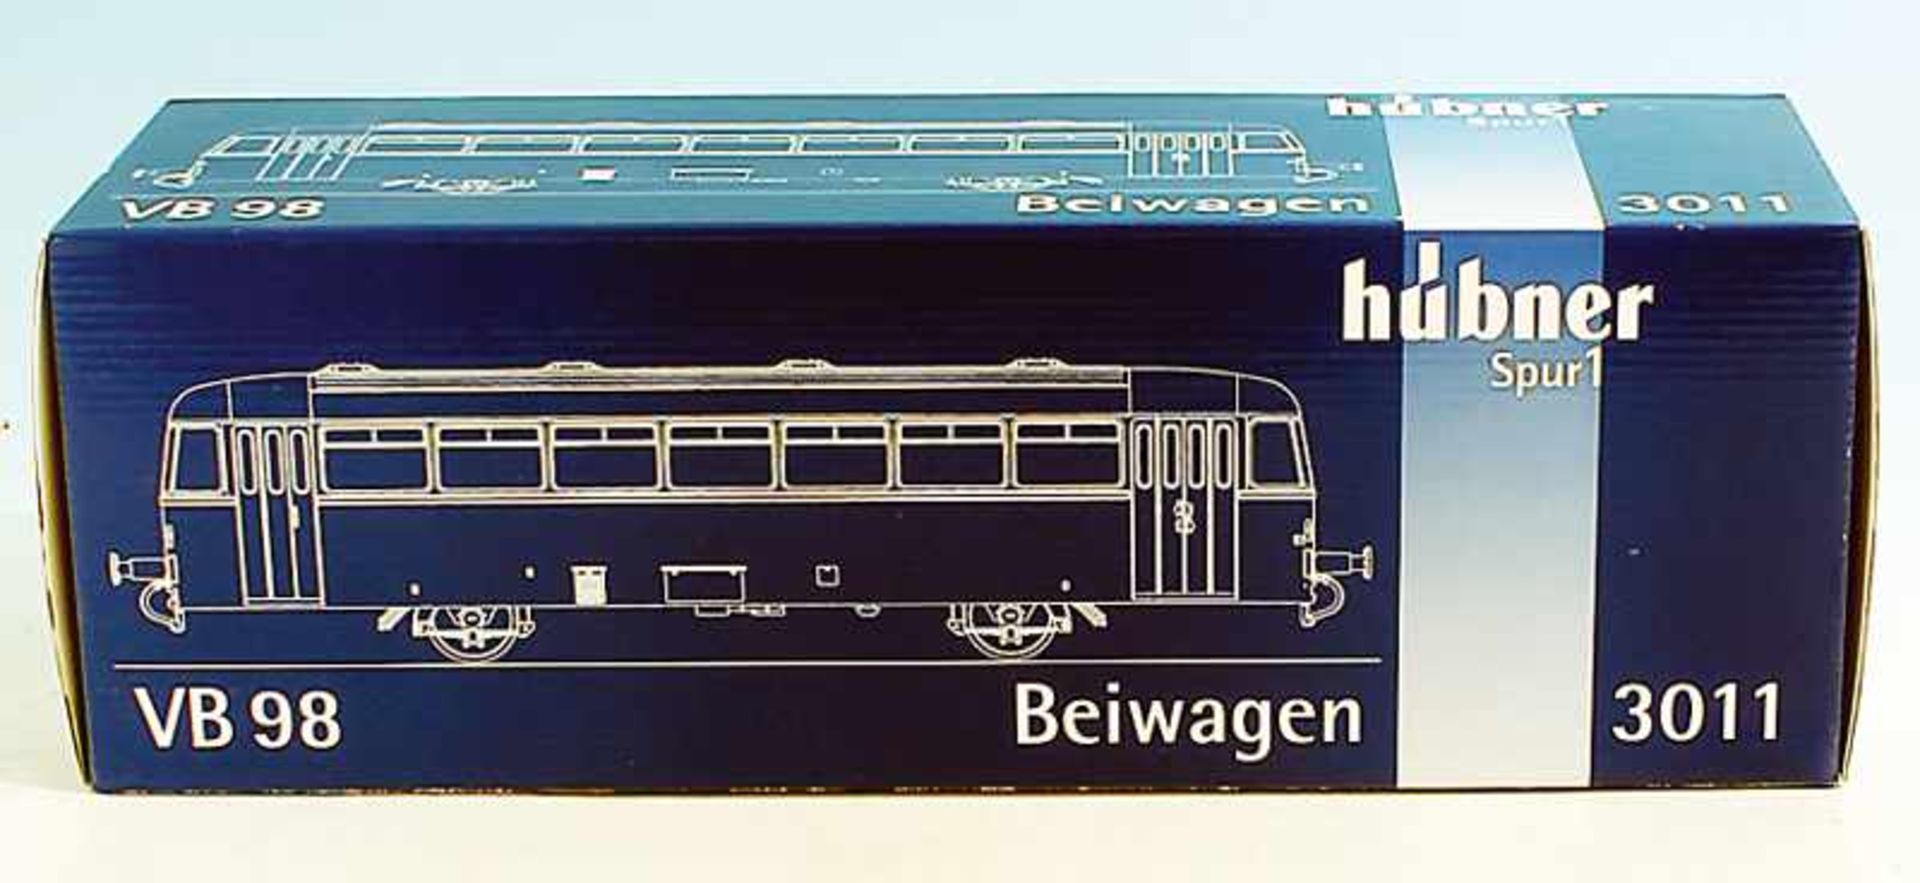 HueBNER Beiwagen VB 98, 3011